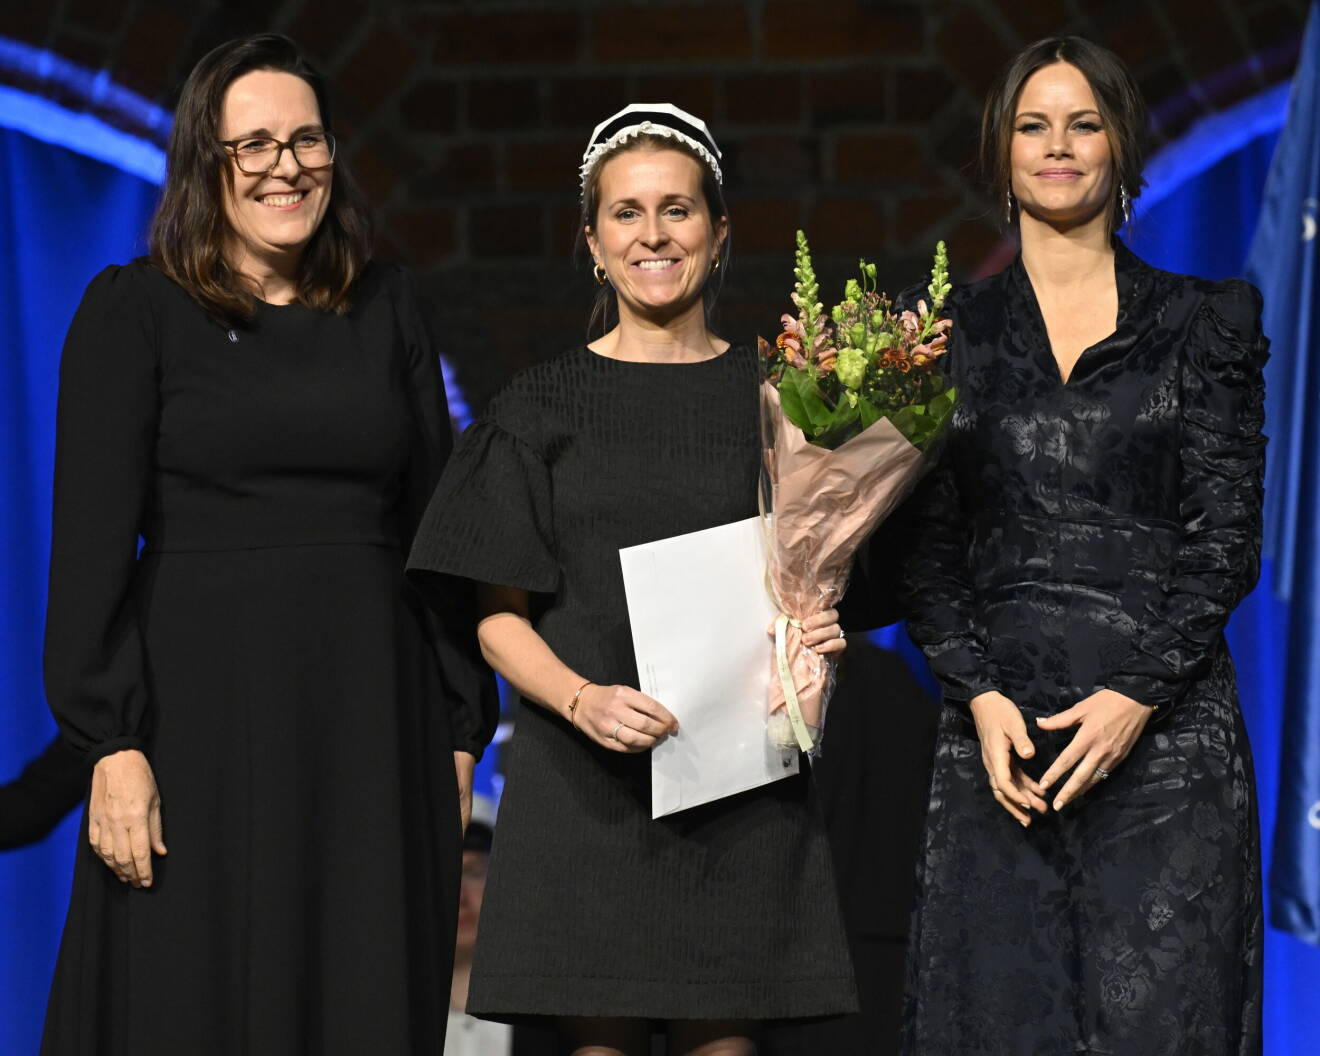 Prinsessan Sofia med stipendiaten Therese von Sivers Segerberg och Sophiahemmet Högskolas Unn-Britt Johansson